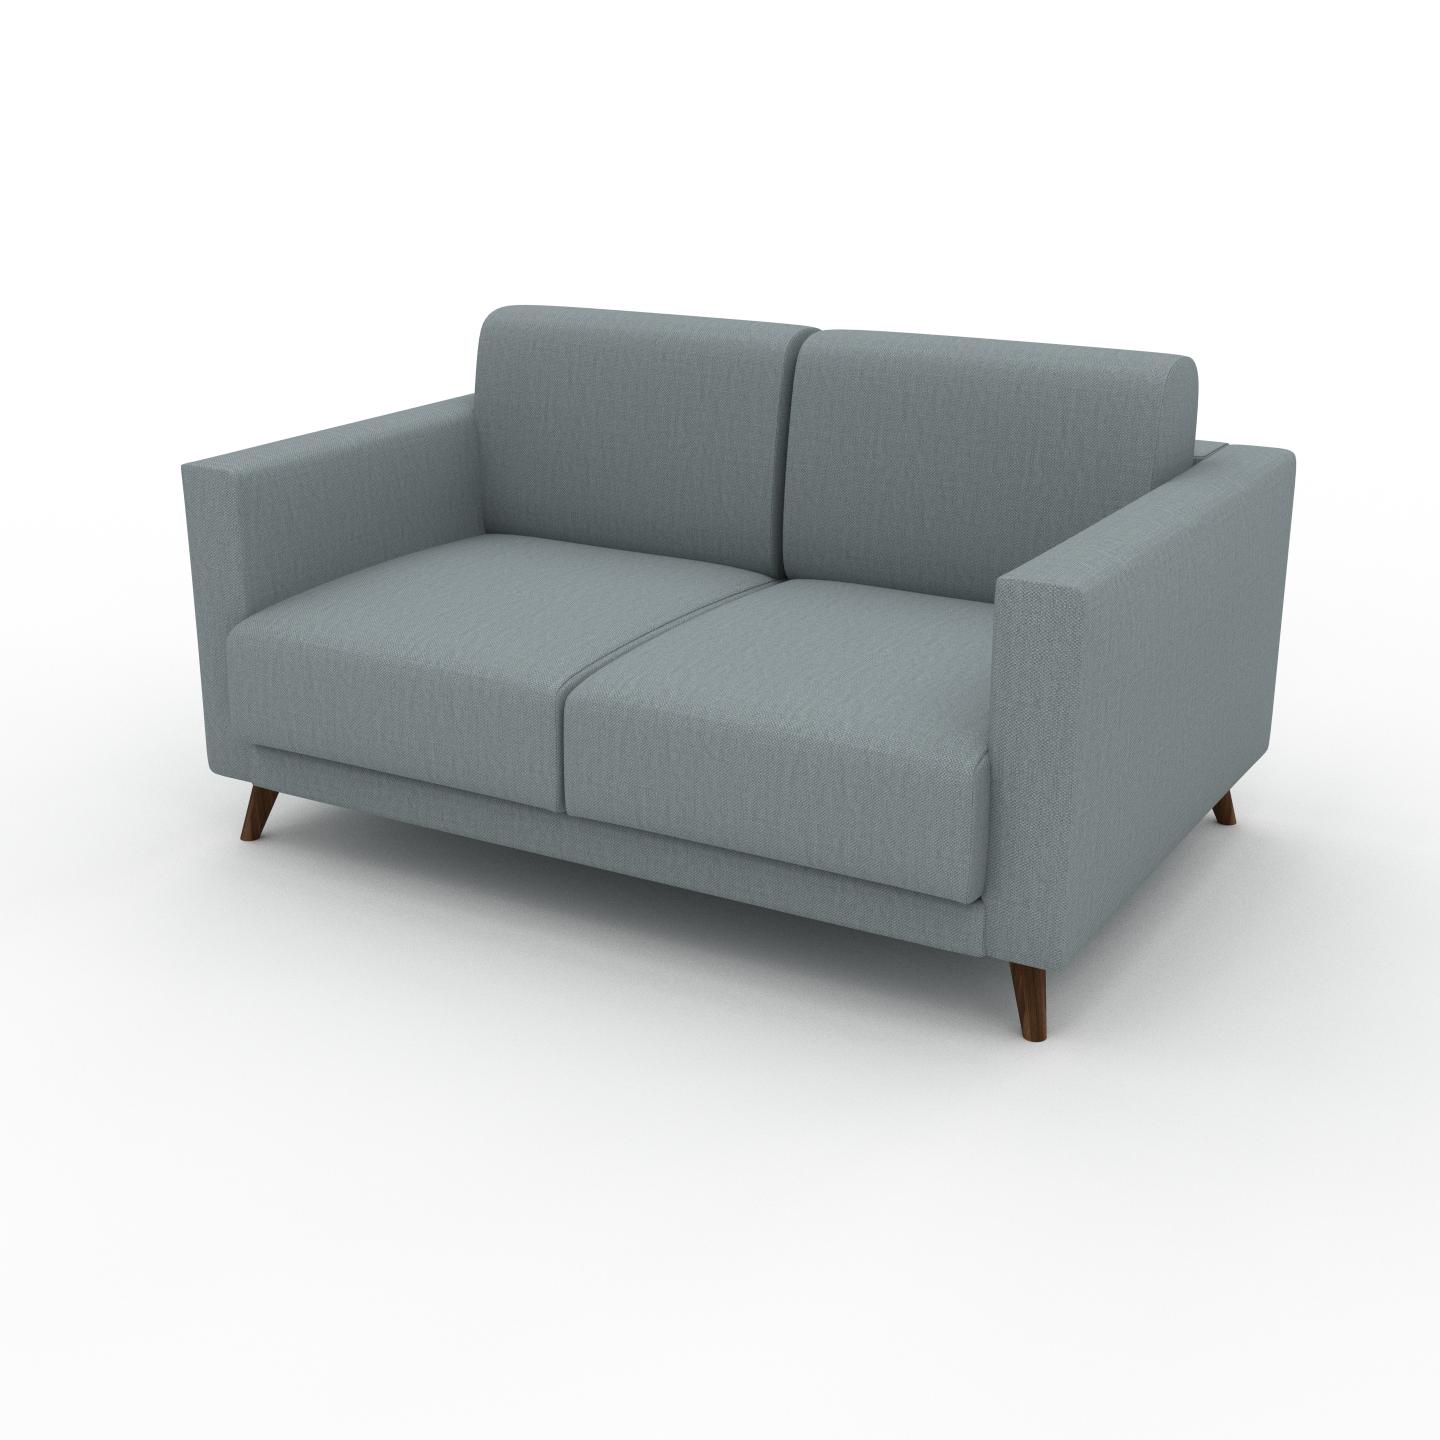 MYCS Sofa 2-Sitzer Taubenblau Webstoff - Elegantes, gemütliches 2-Sitzer Sofa: Hochwertige Qualität, einzigartiges Design - 145 x 75 x 98 cm,...